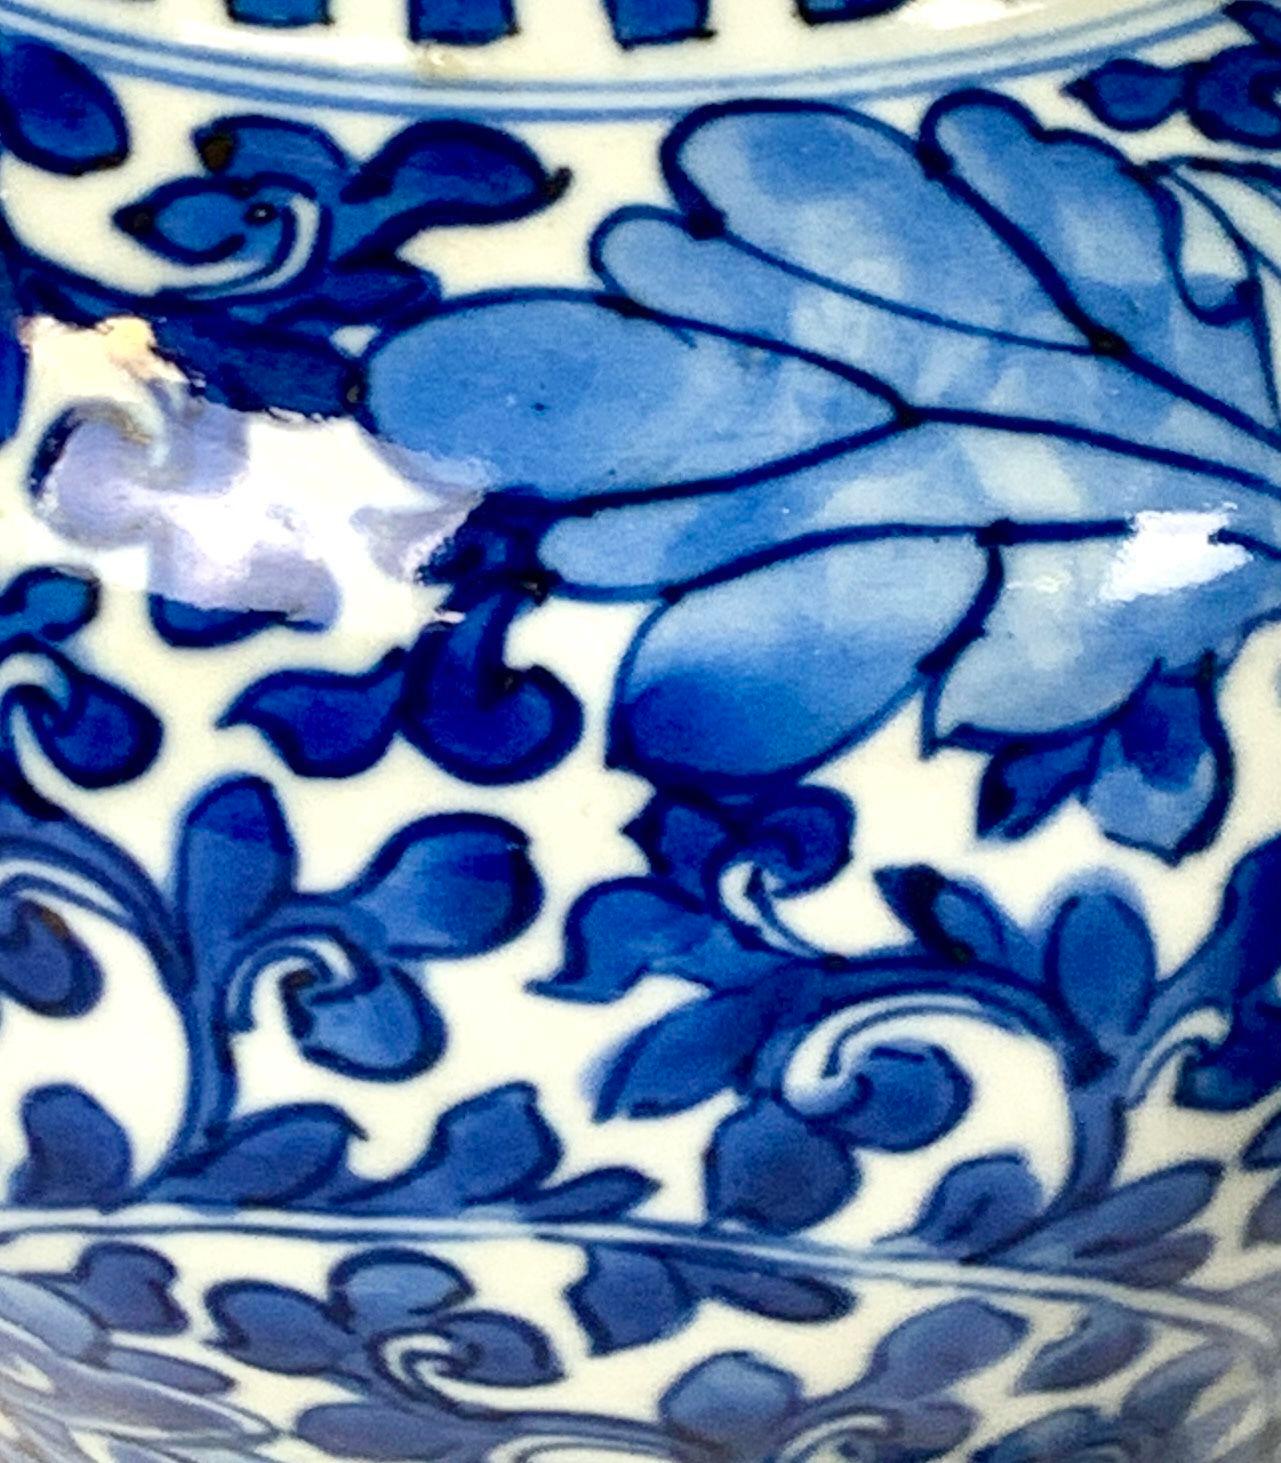 Dieses schöne Paar blau-weißer chinesischer Porzellankrüge wurde um 1875 während der Herrschaft des Guangxu-Kaisers hergestellt.
Sie sind in exquisitem Kobaltblau handbemalt und kommen in der Auslage wunderbar zur Geltung. 
Auf der Oberfläche der